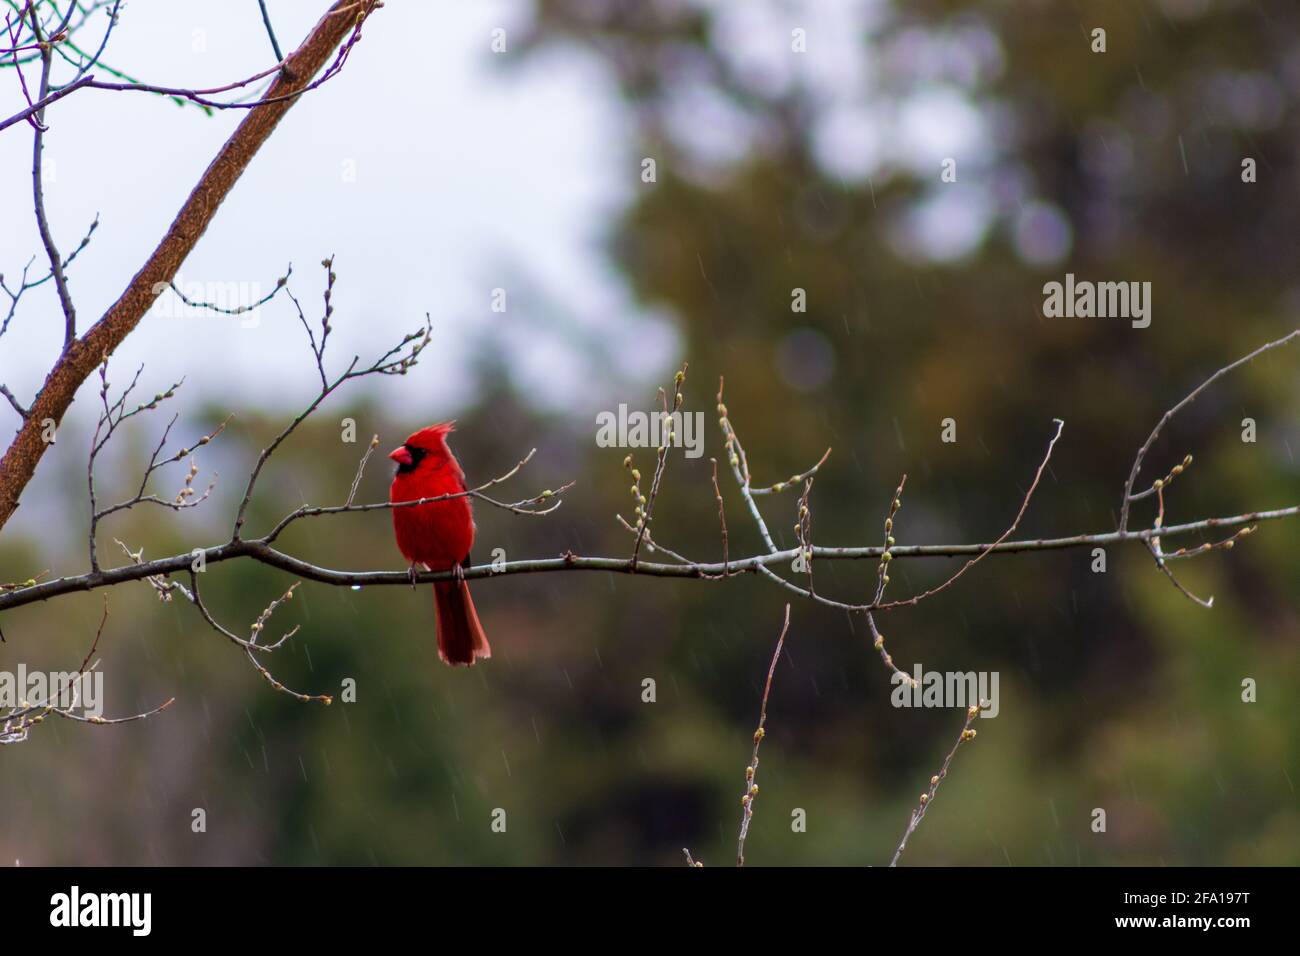 Un cardinal rouge brillant se trouve sur la branche d'un arbre à baies, tandis qu'une pluie de printemps fraîche tombe dans un bruine. Banque D'Images